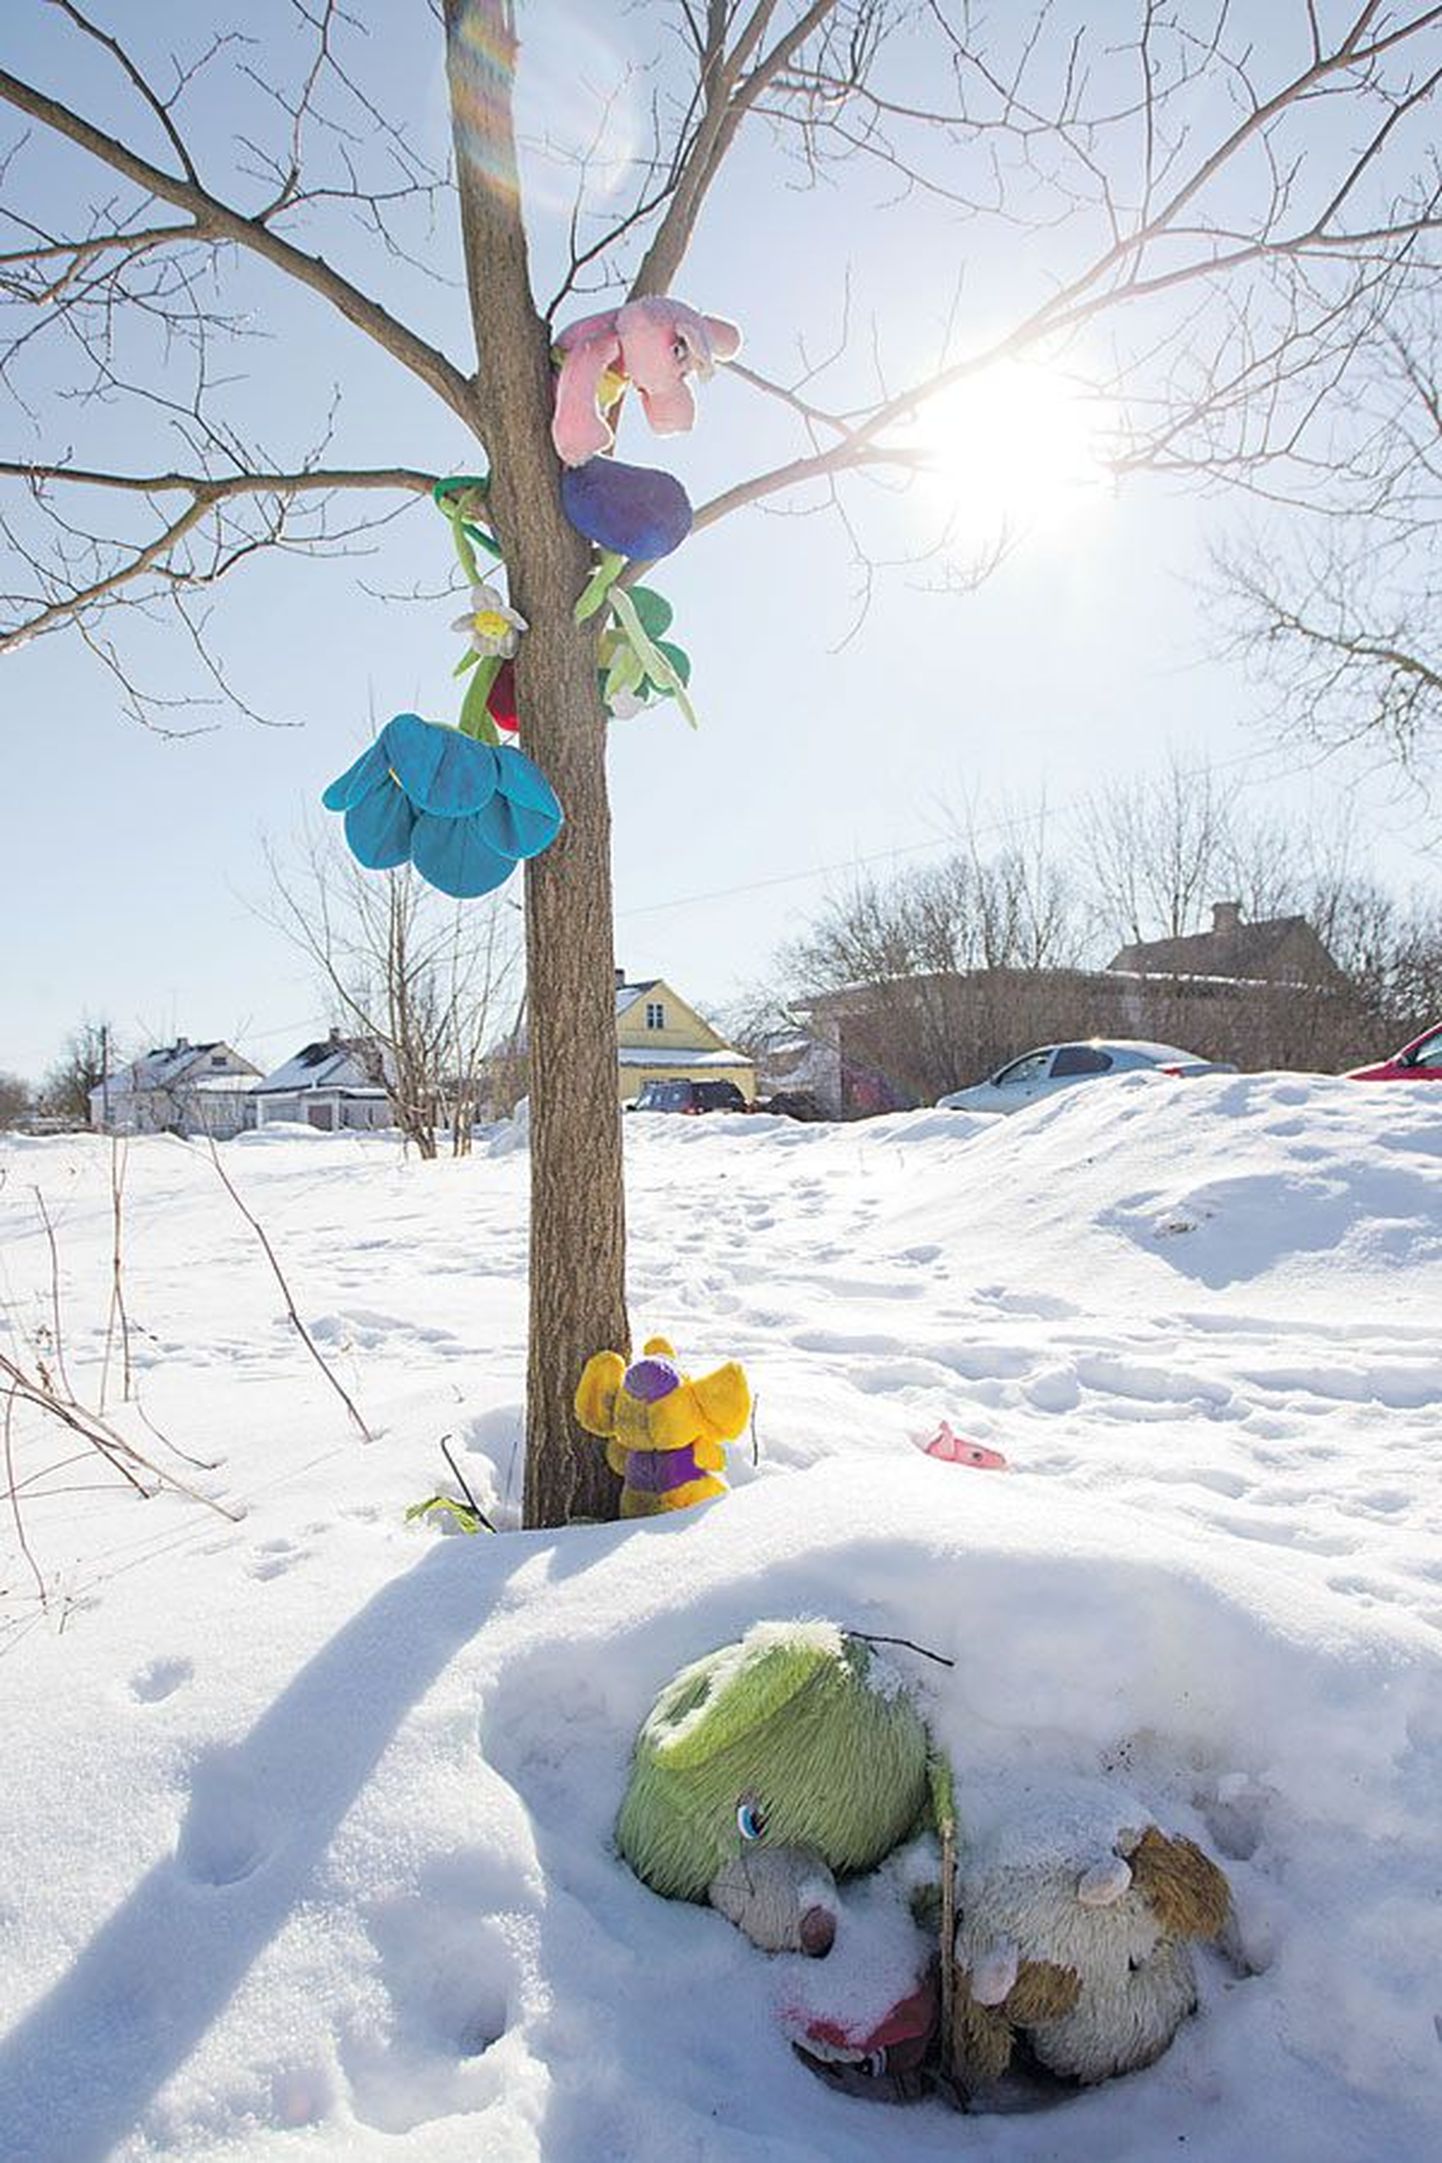 Место, где нашли тело Варвары Ивановой, через год после случившегося. Потрясенные жес­токим убийством девочки, жители приграничного города и сейчас приносят сюда цветы и игрушки. Многие из них сейчас покрыты толстым слоем снега.